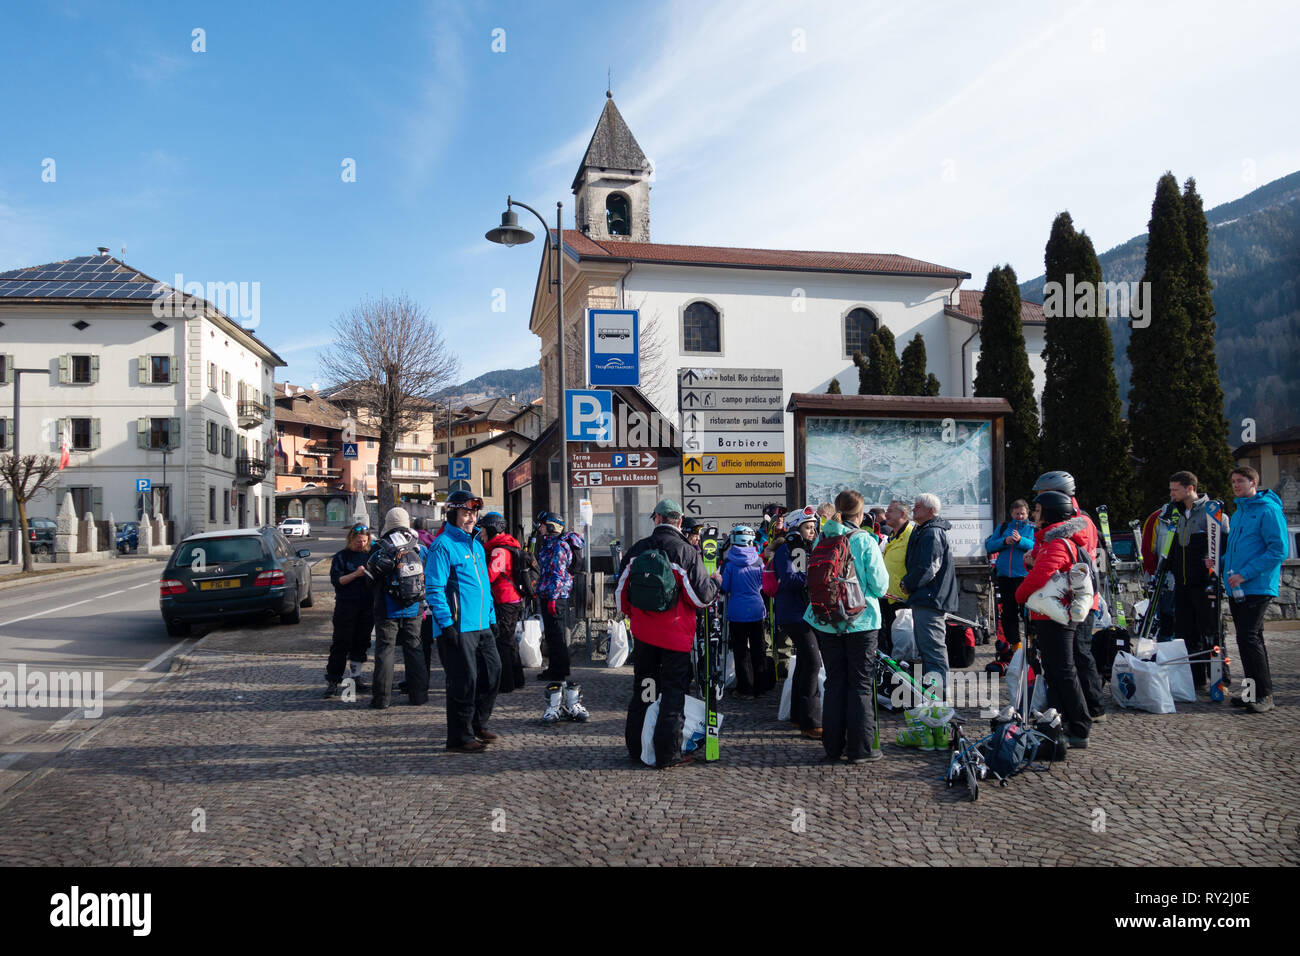 Gli sciatori in attesa ad una fermata dello ski bus, Pinzolo village, Dolomiti di Brenta, Italia del nord Europa Foto Stock